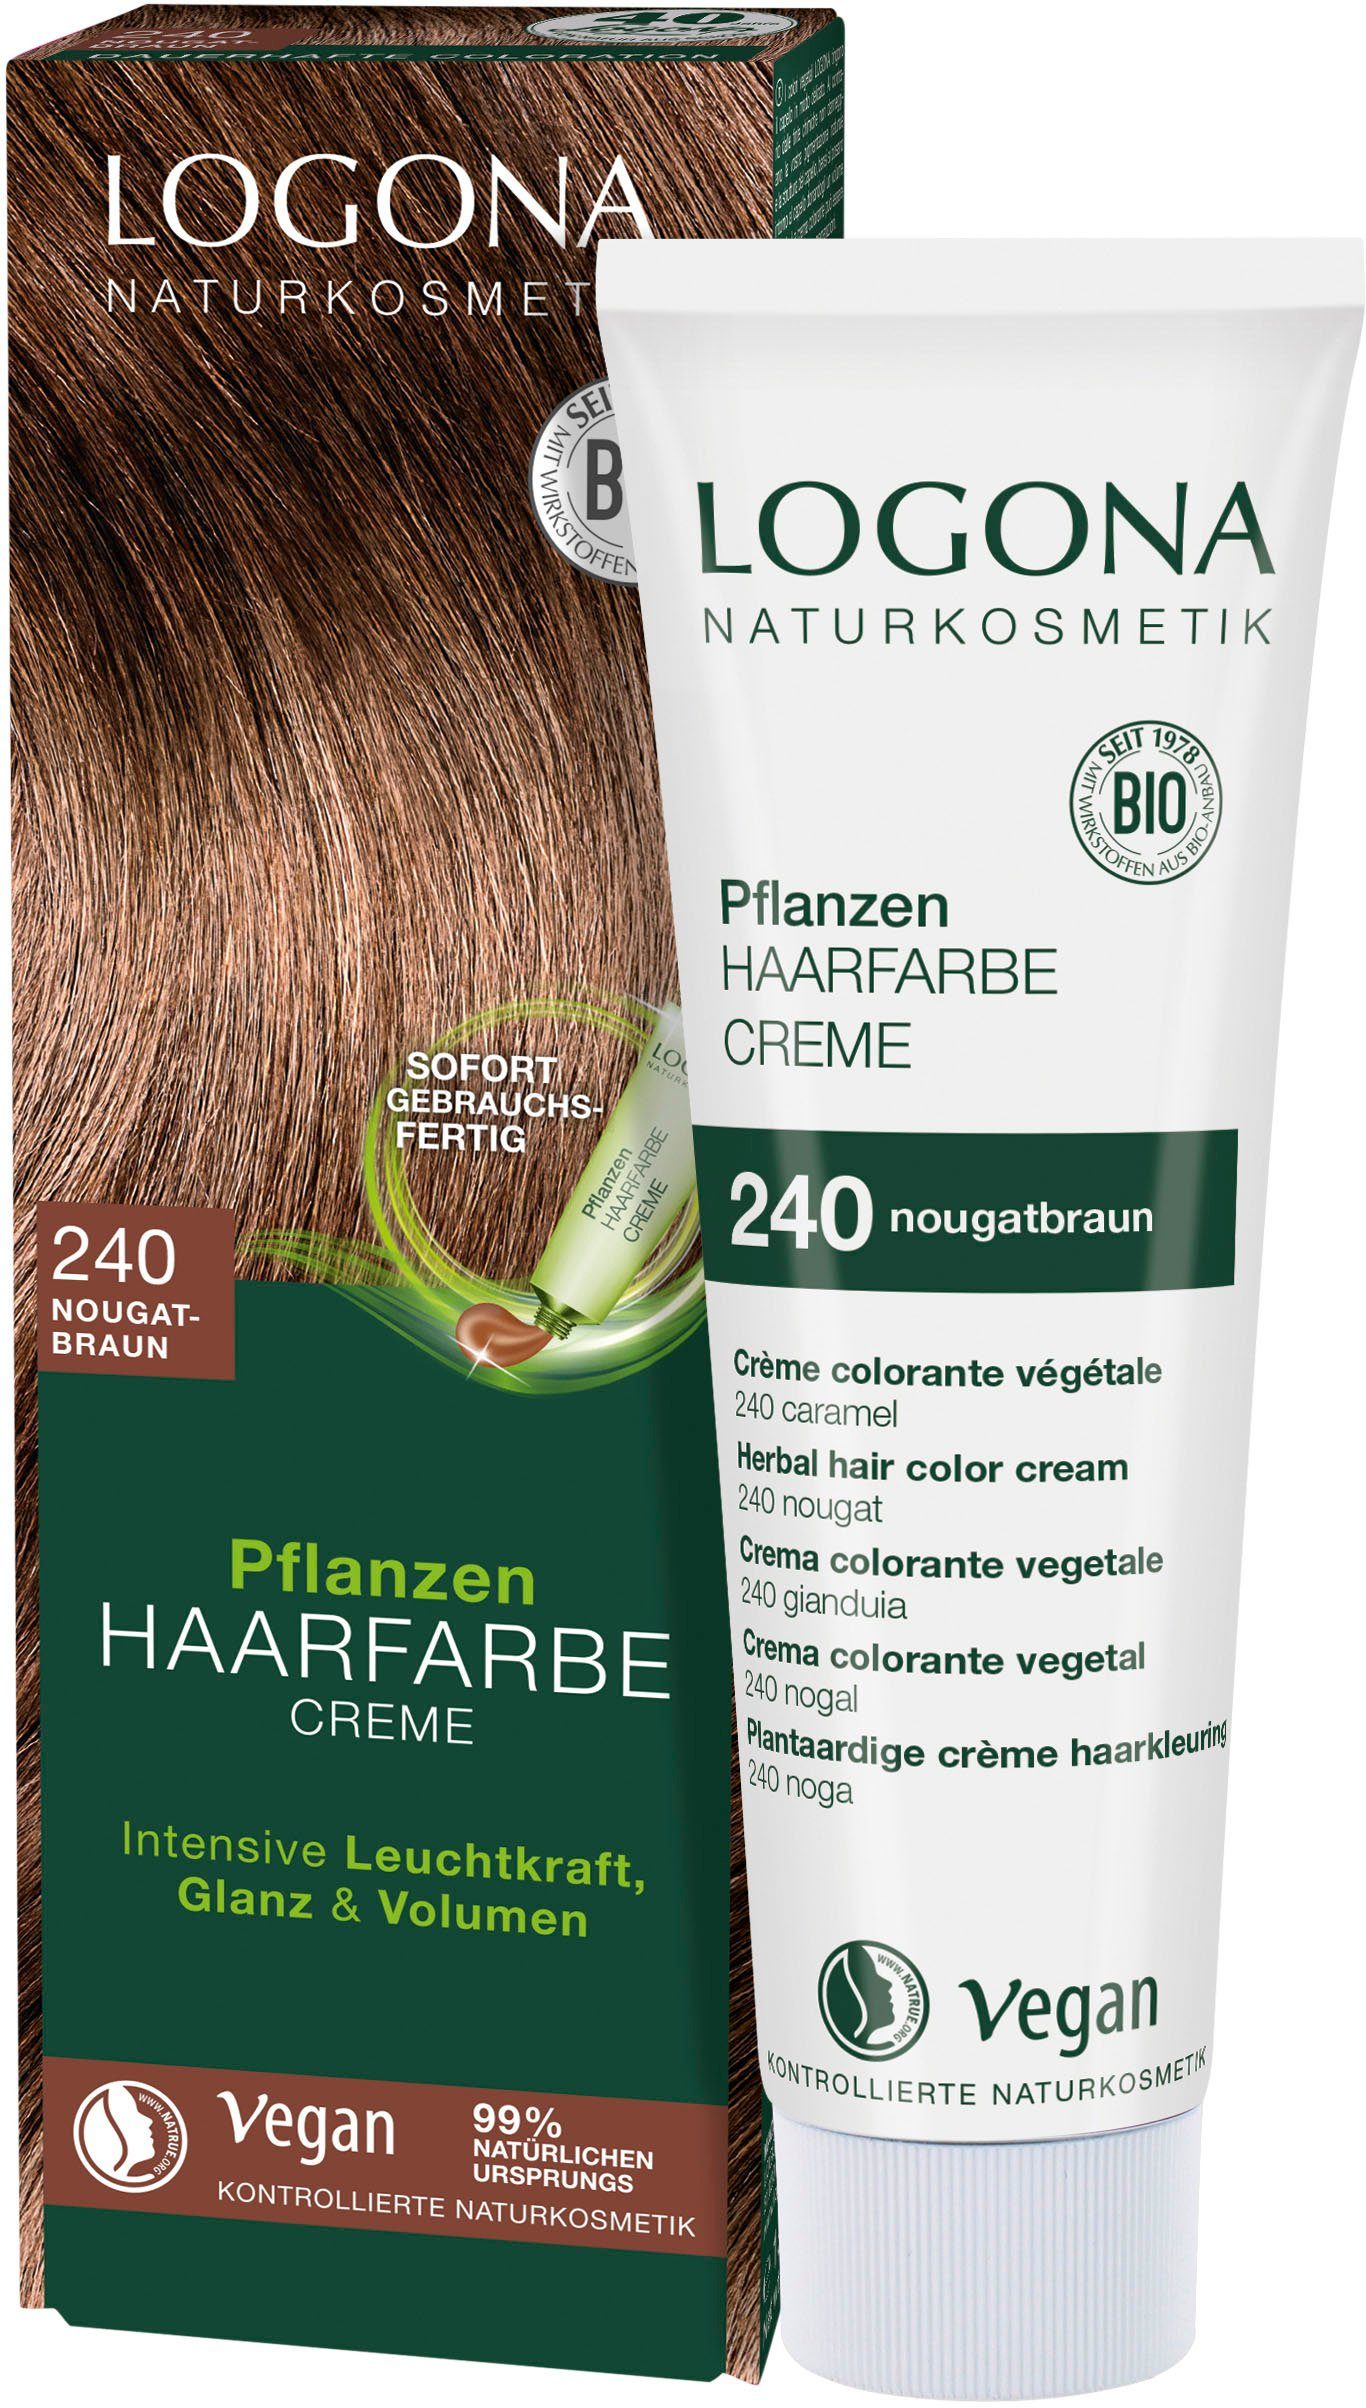 Creme LOGONA 240 nougatbraun Haarfarbe Logona Pflanzen-Haarfarbe